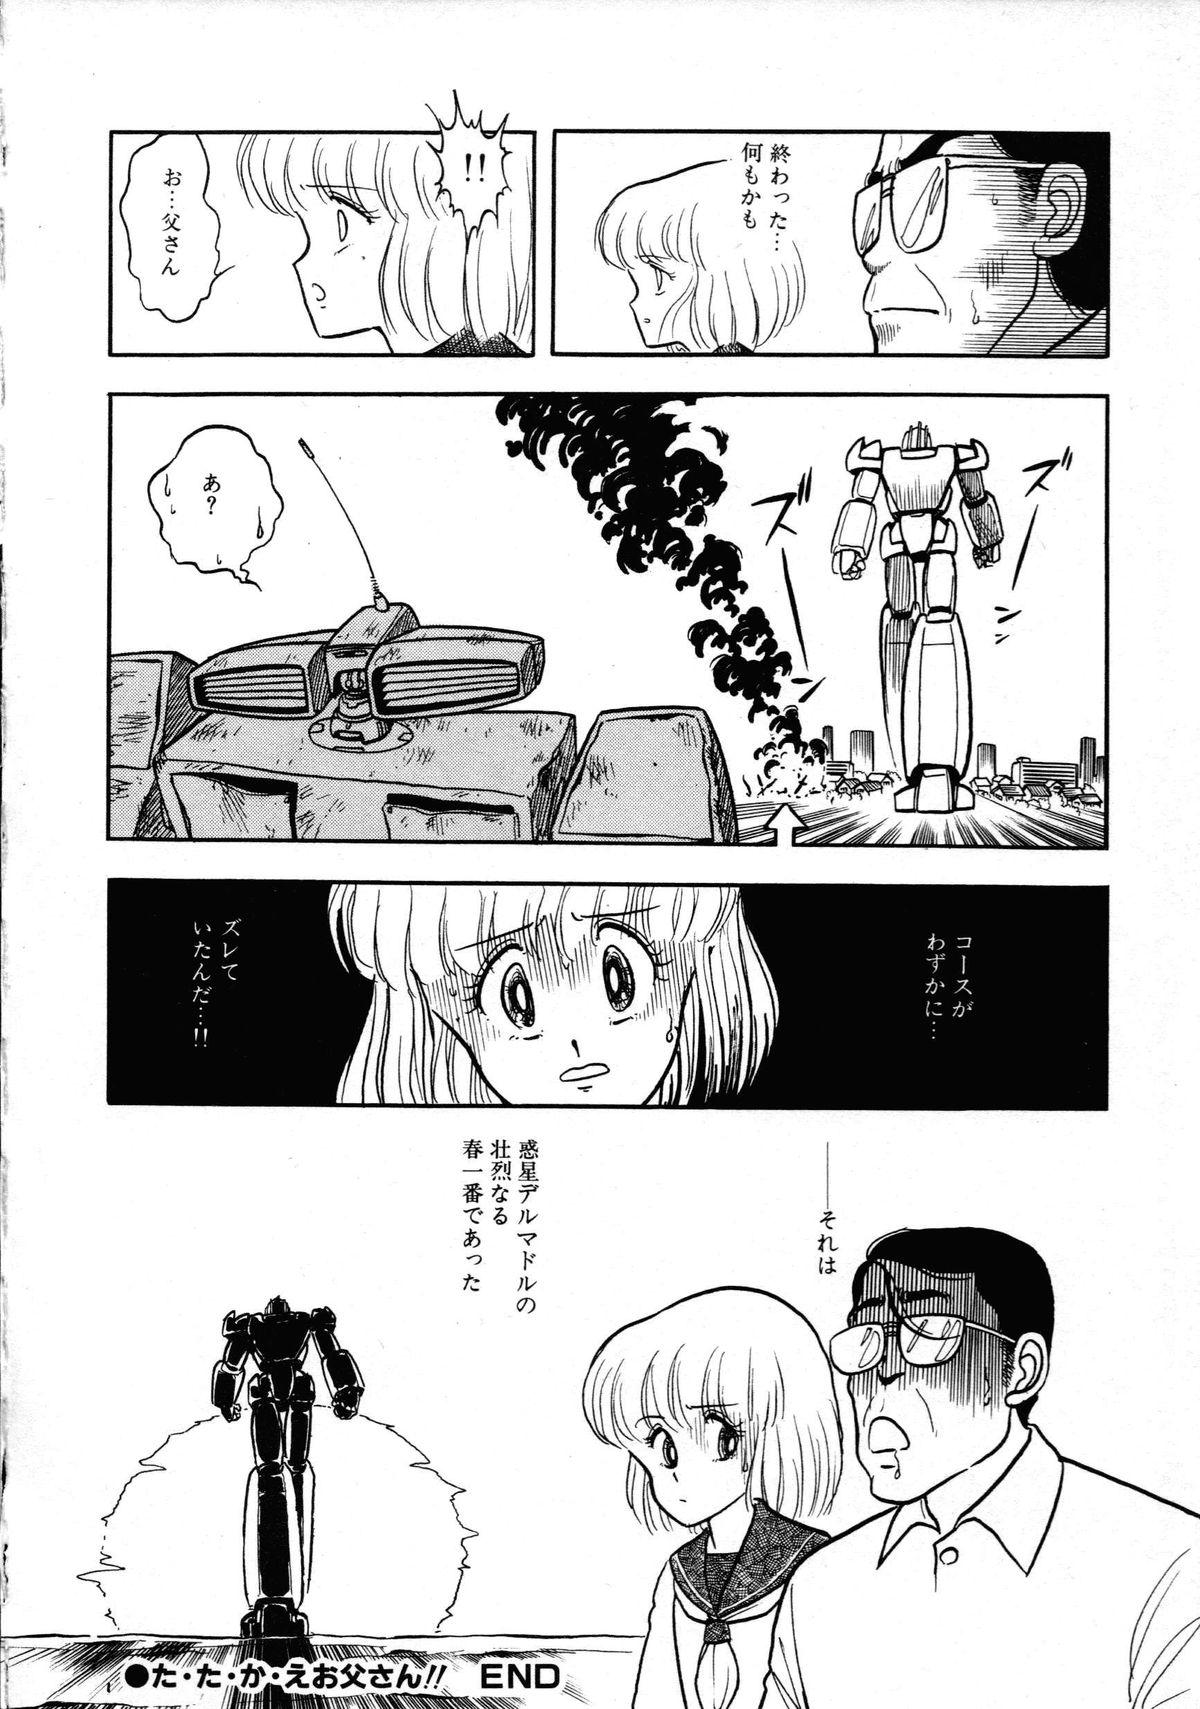 [Anthology] Robot & Bishoujo Kessakusen - Lemon People 1982-1986 89